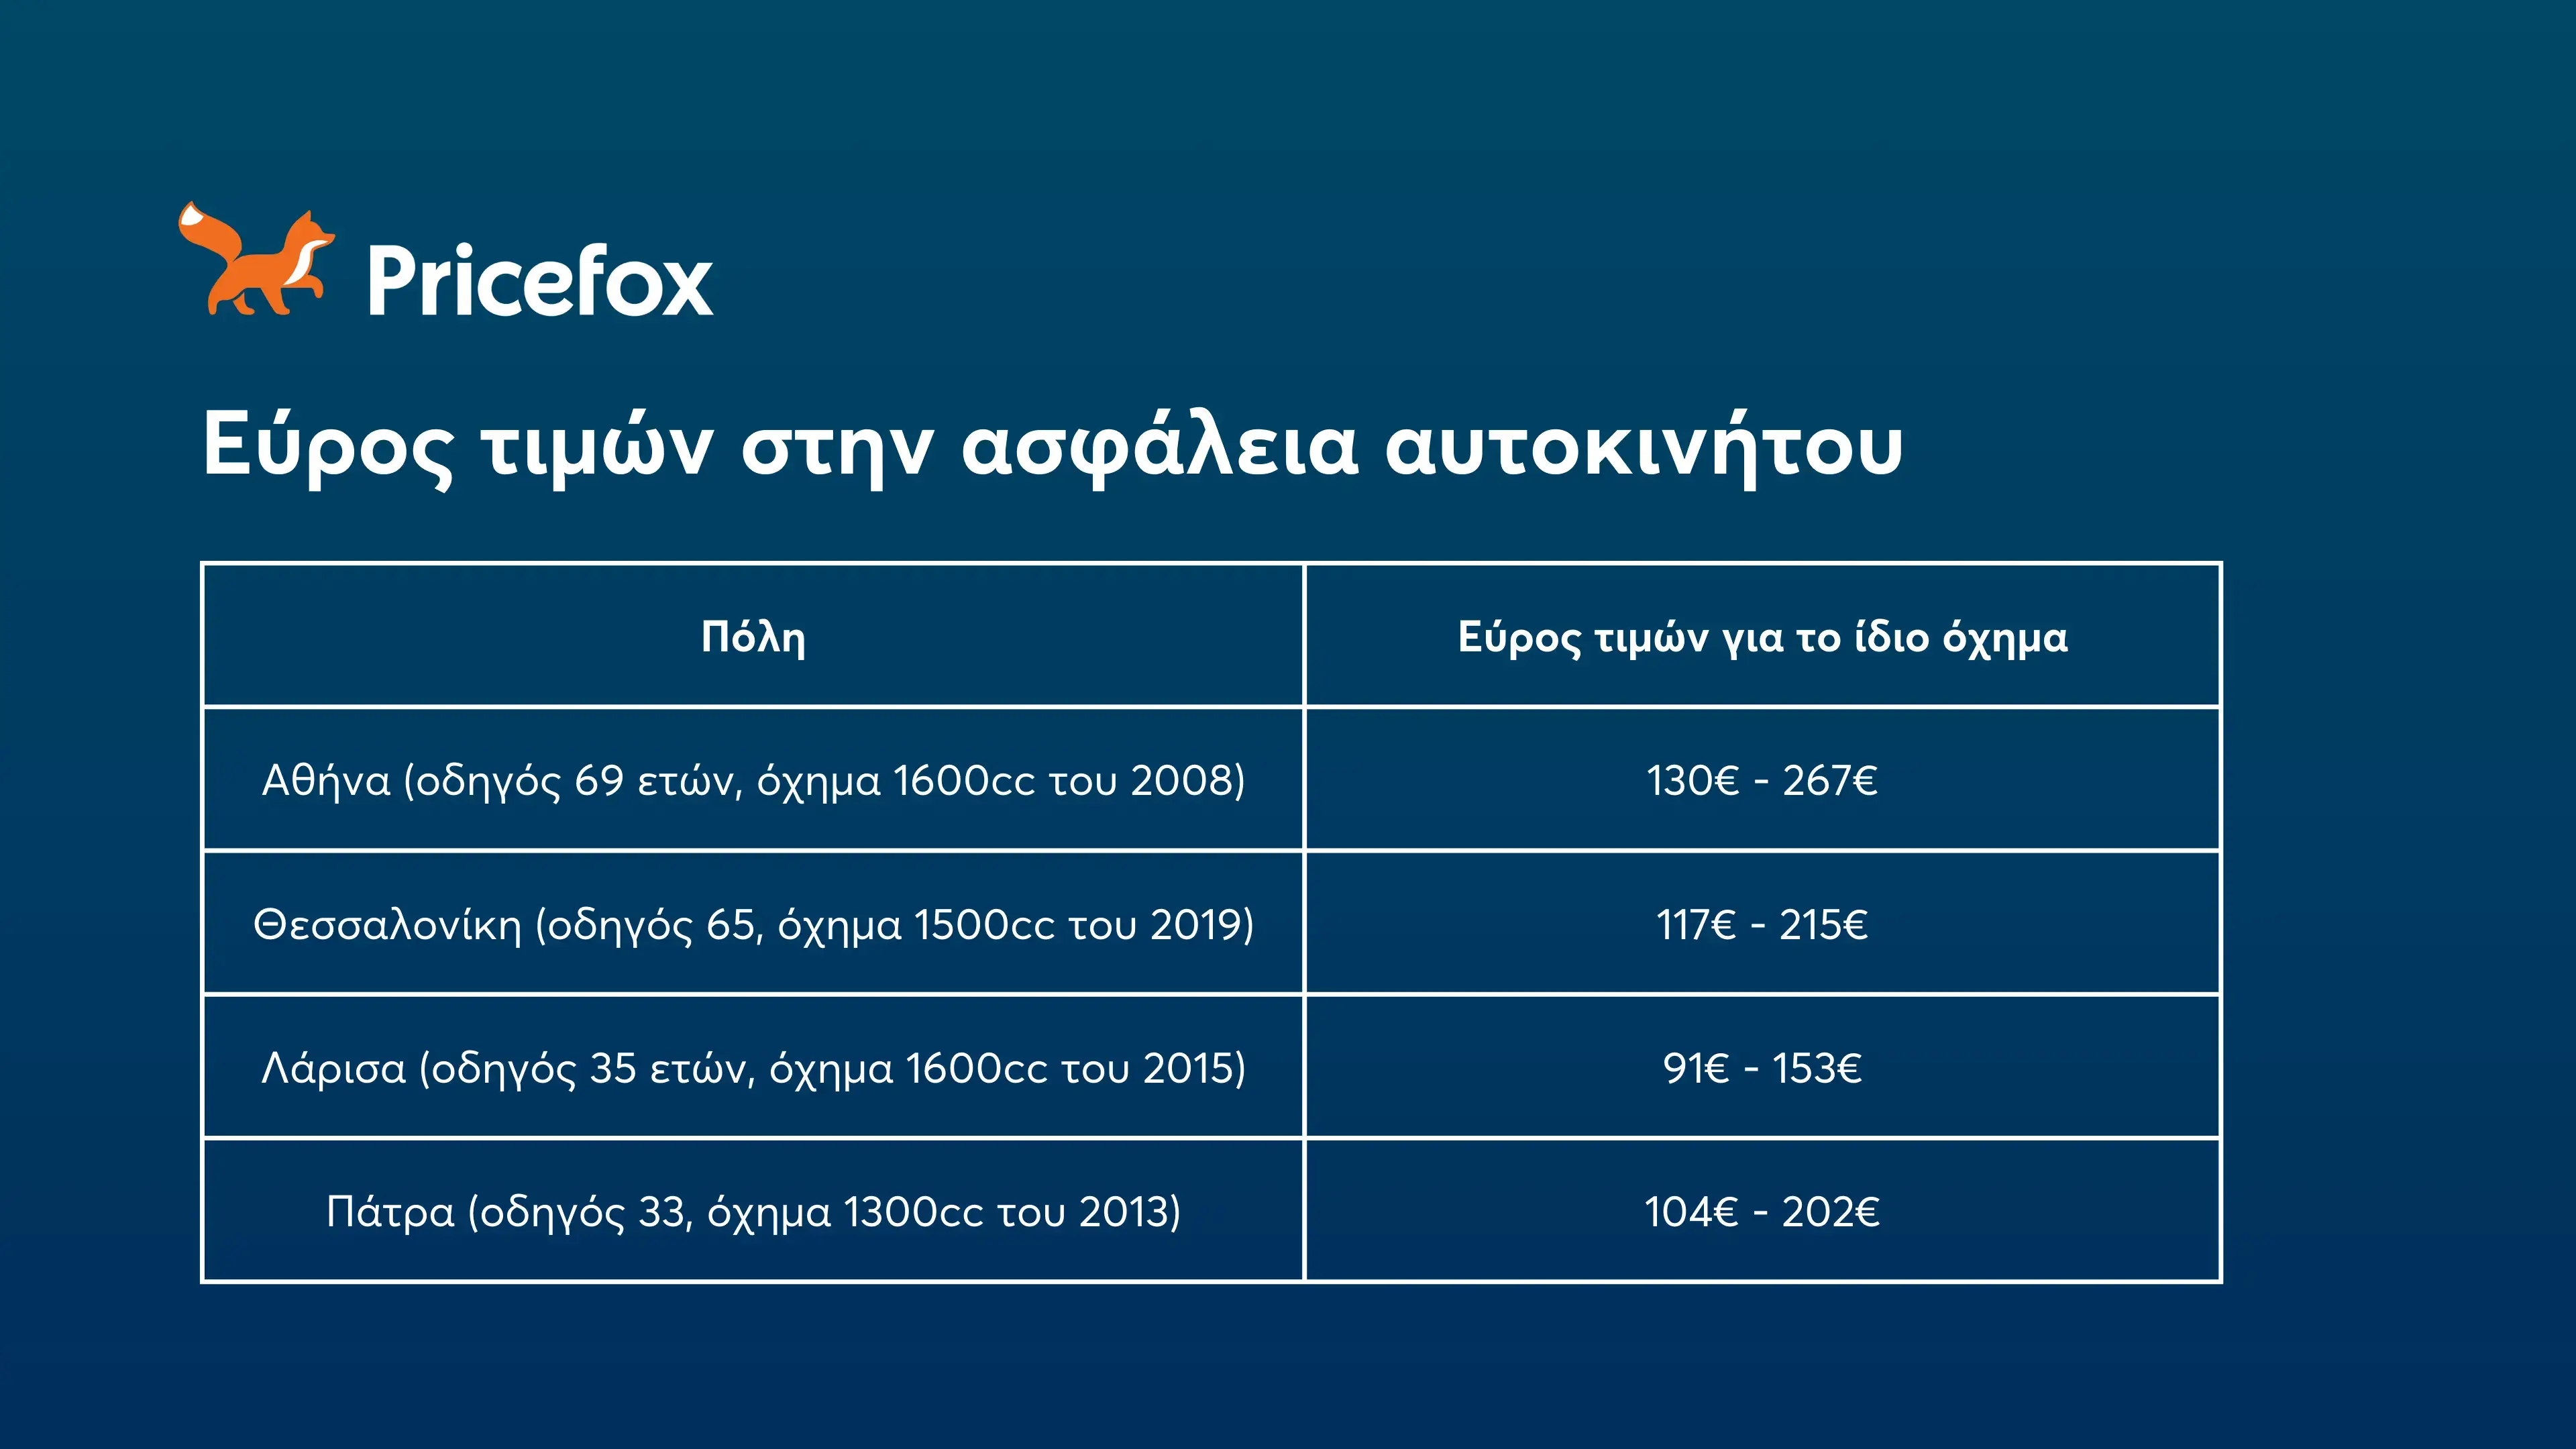 πίνακας με το εύρος τιμών στις μεγαλύτερες πόλεις της Ελλάδας